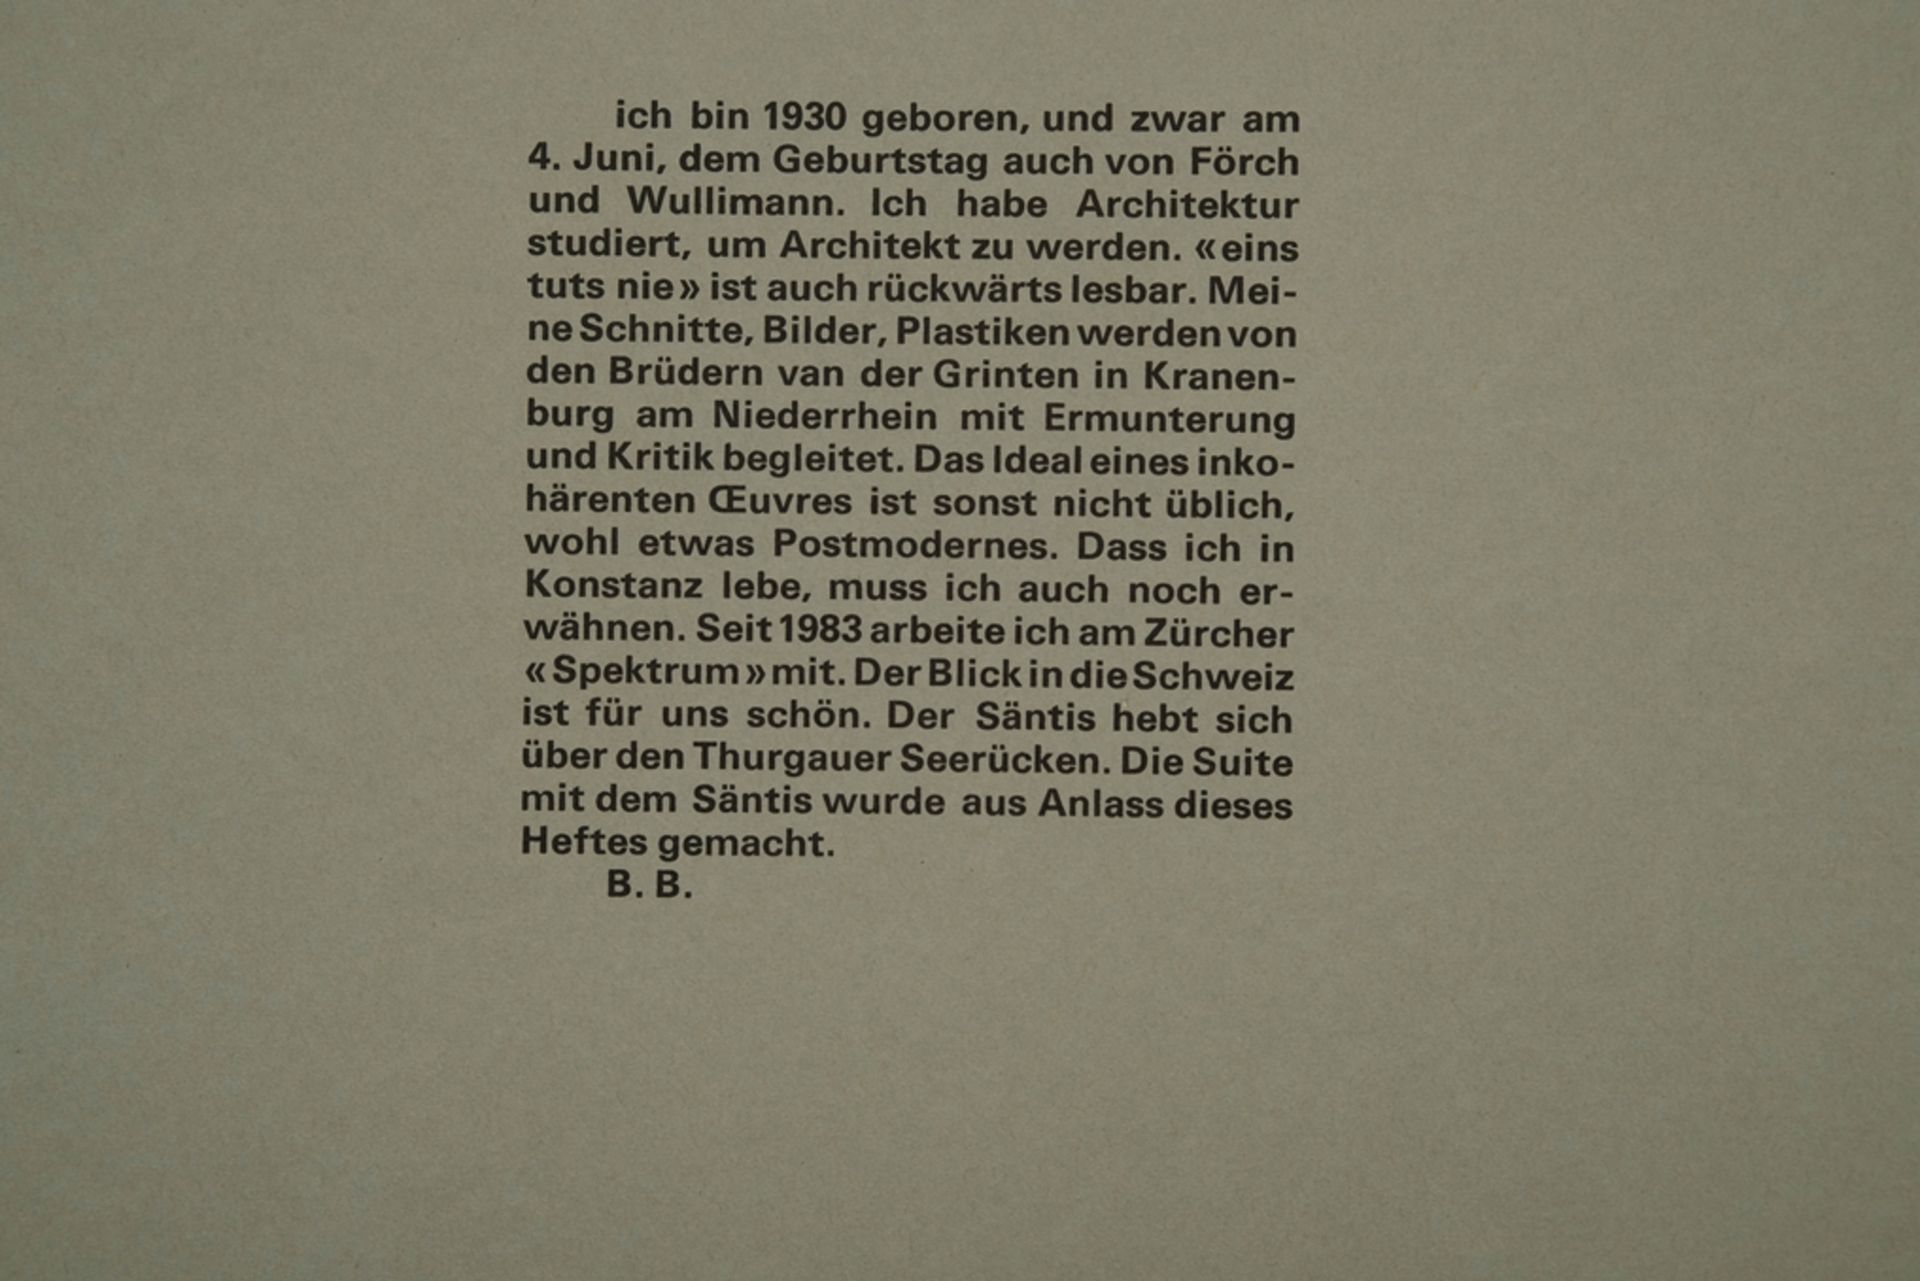 BEYERLE Burkhart (1930) "Xylon 71", Nr. 71, April 1987, Zürich, 8 Blätter, Holzschnitt, 1 Schrift ' - Bild 7 aus 7